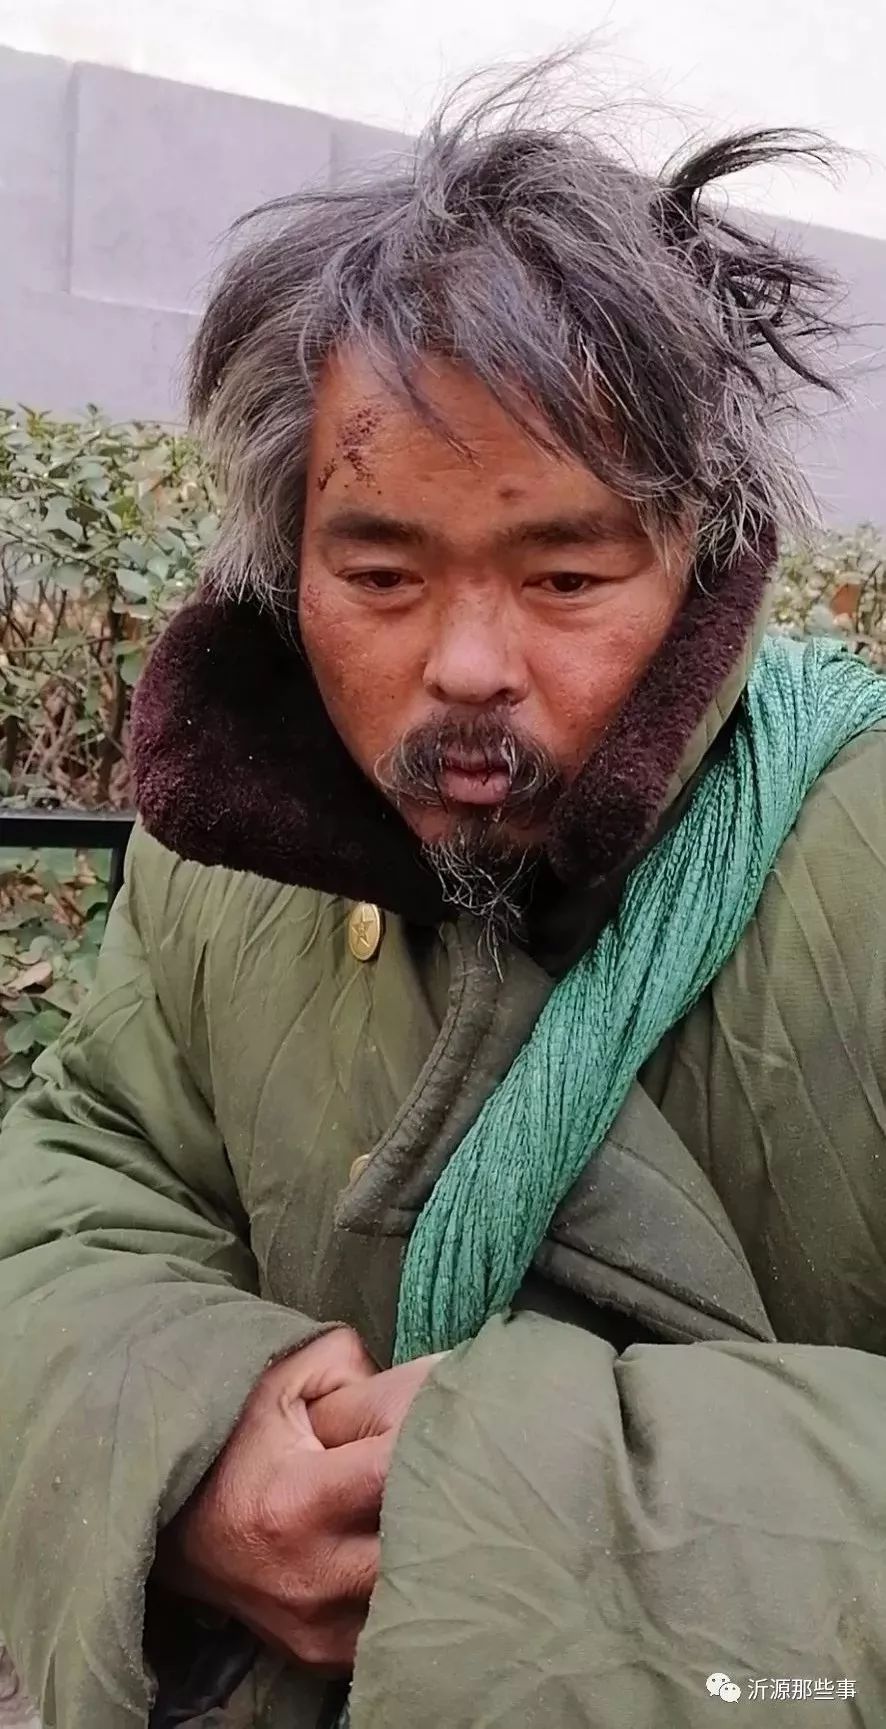 「感动」郓城冷漠哥的淄博暖遇,一个月让他变了个人